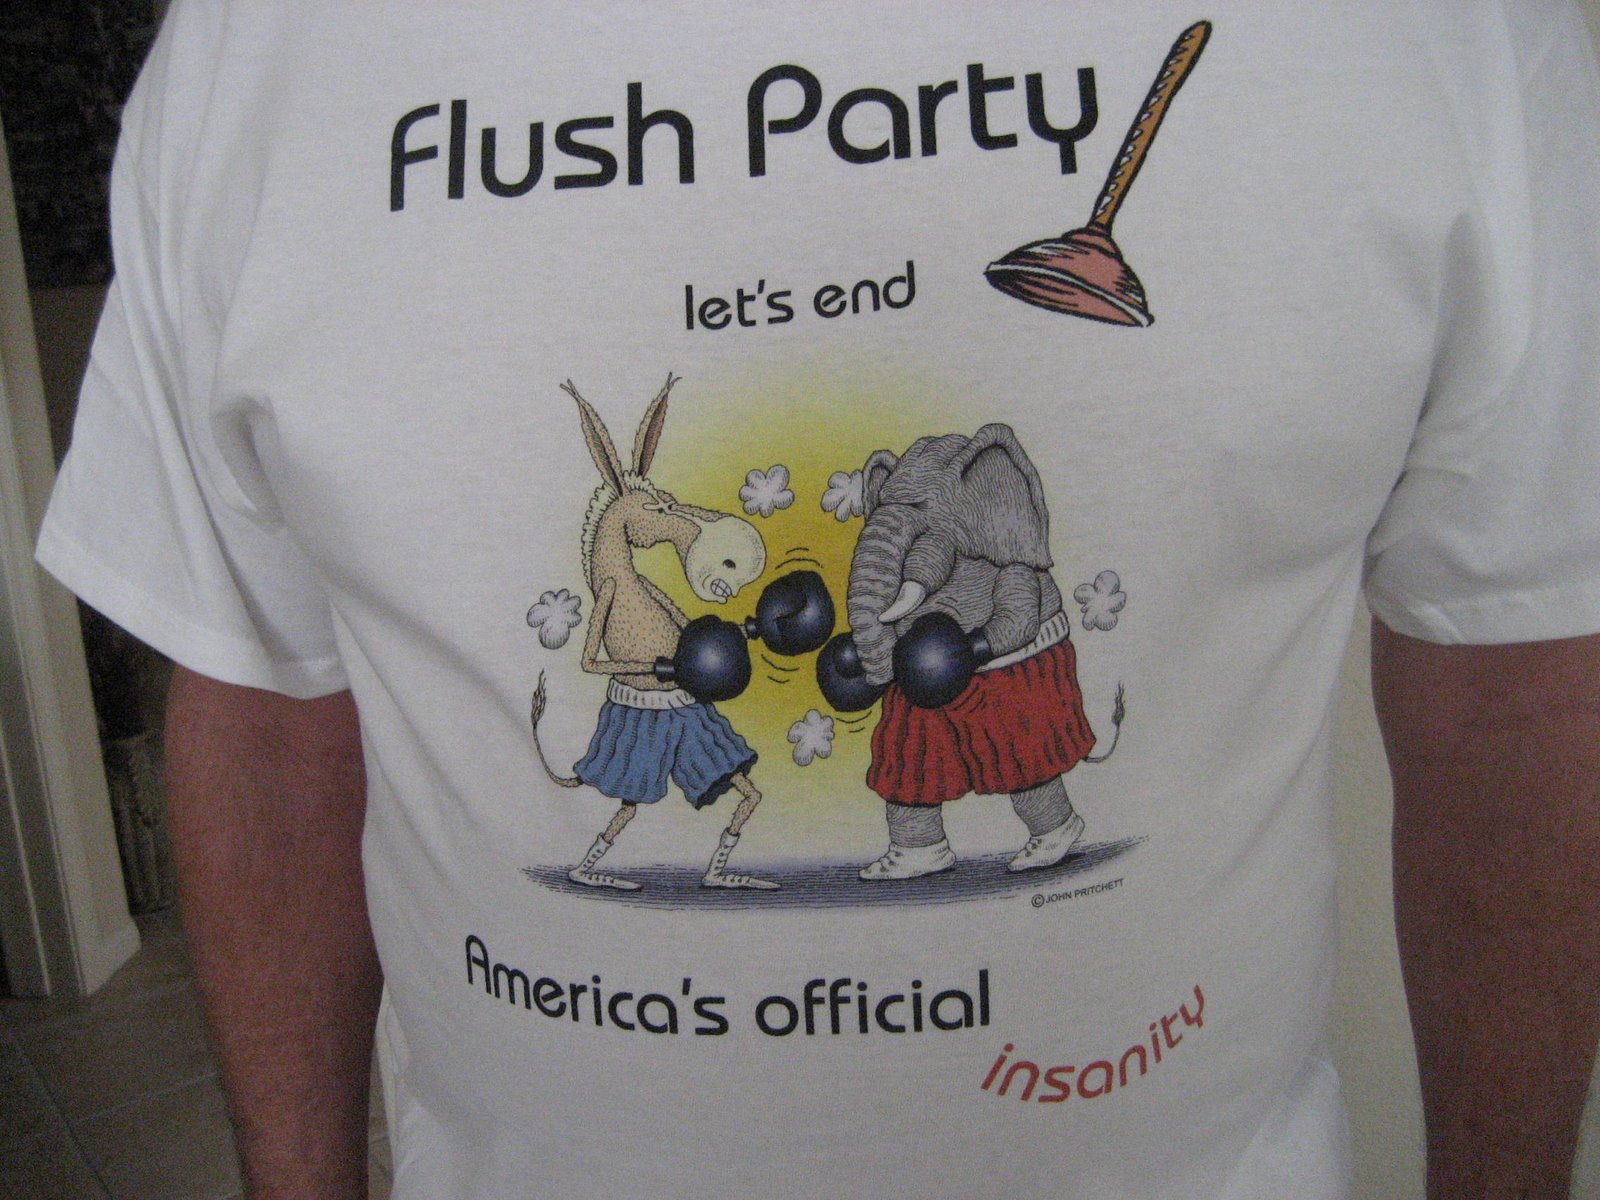 Flush Party